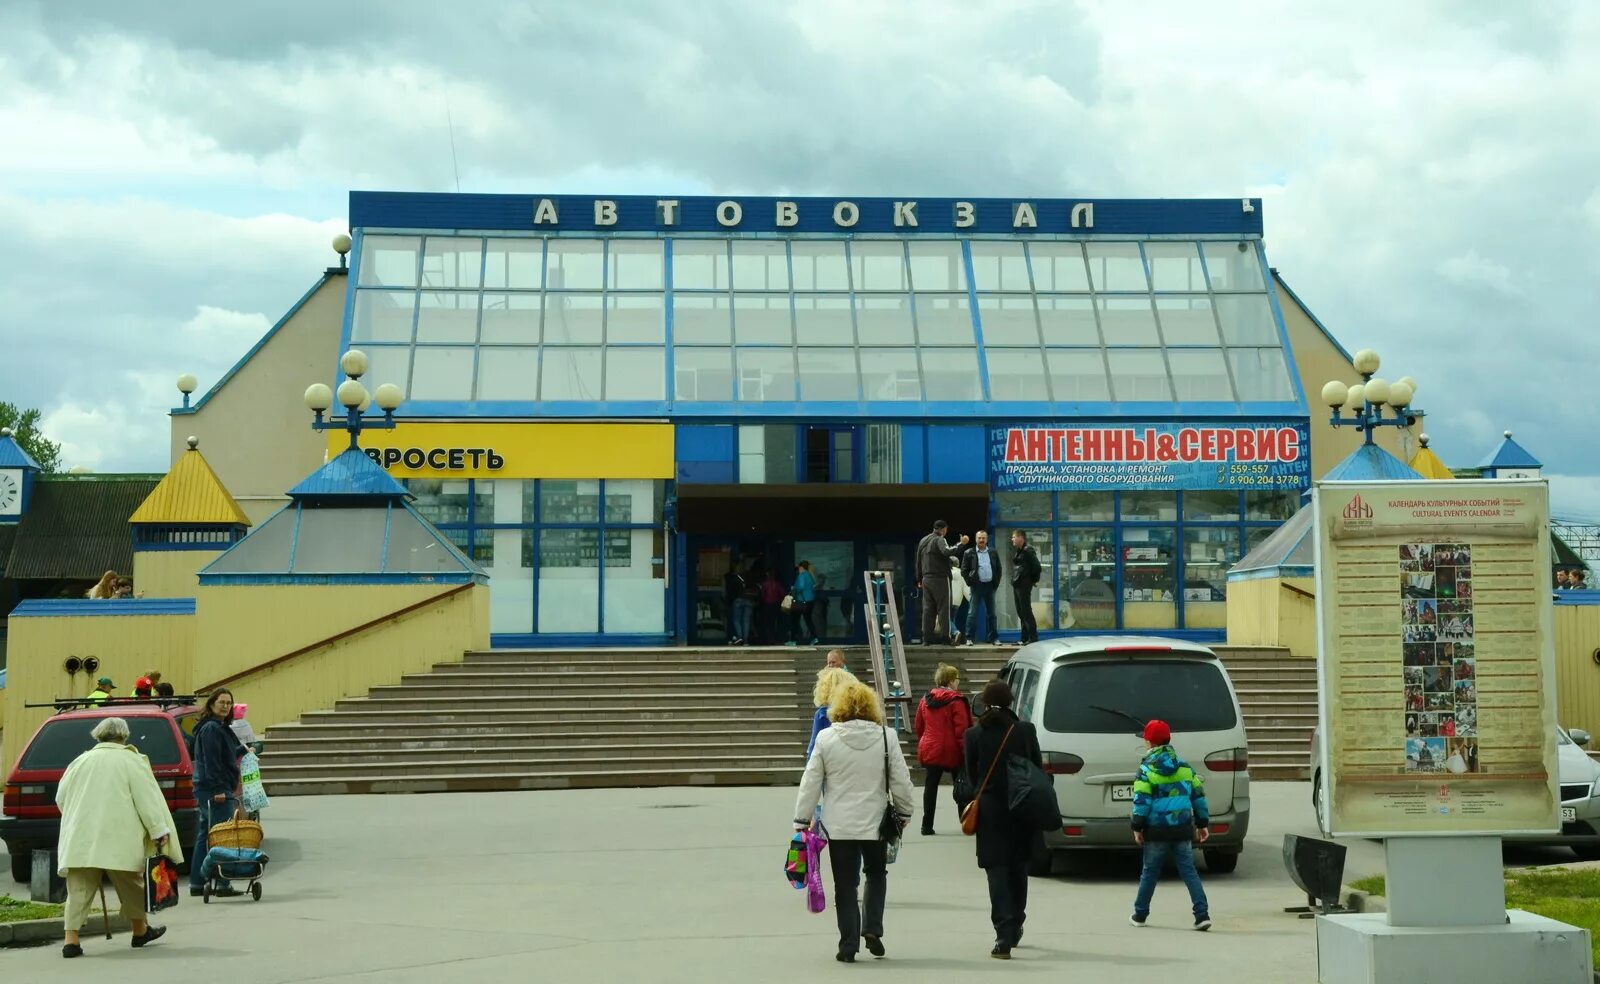 Автовокзал Великий Новгород. Автобусный вокзал Великий Новгород. Автовокзал в Великом Новгороде. Автовокзал Великий Новгород автобус.